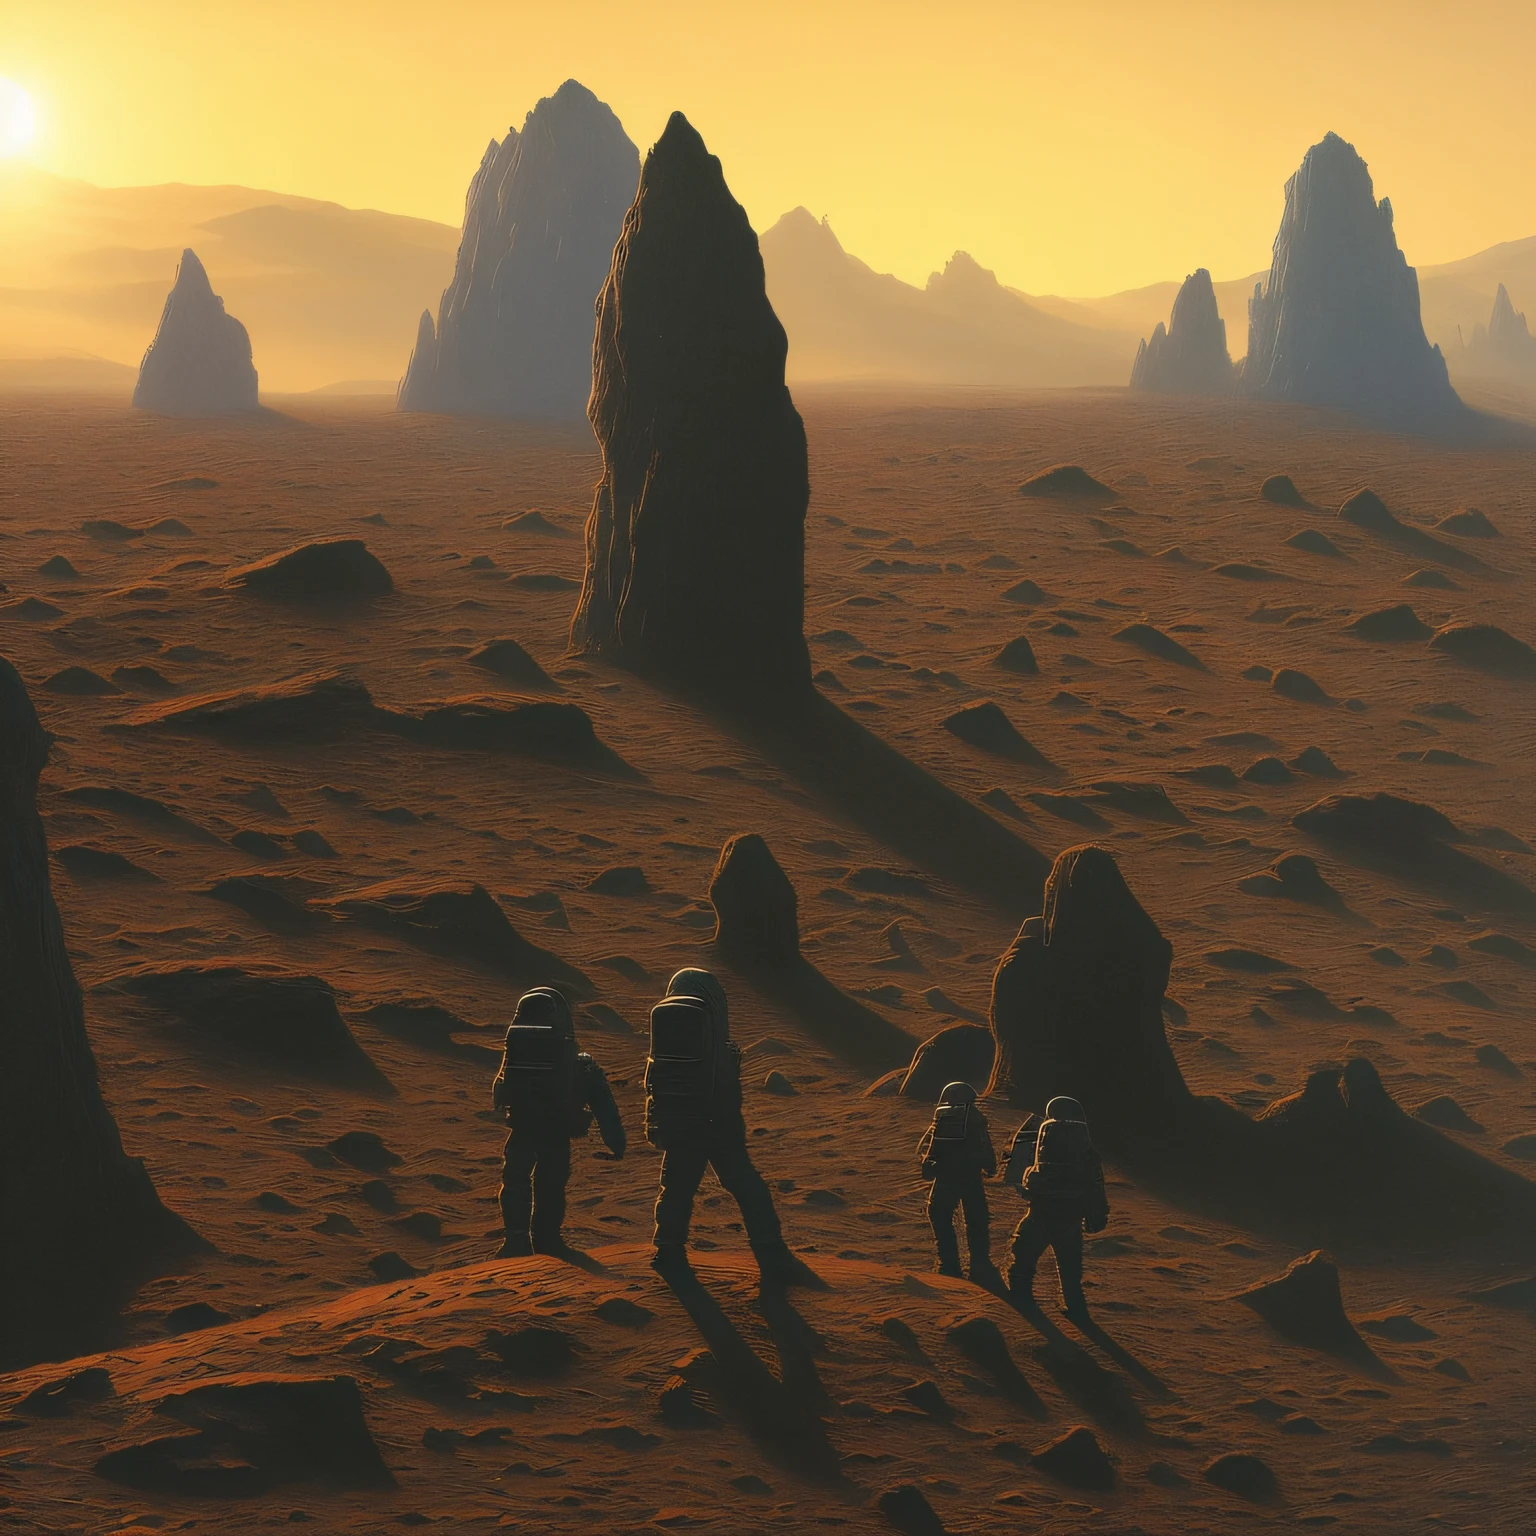 (desenho:1.3) de,(sozinho:1) astronautas humanos descobrem uma arquitetura alienígena em Marte, brilho do sol,(pelo artista Zdzislaw Beksinski:1),(Arte Vaporwave:1)